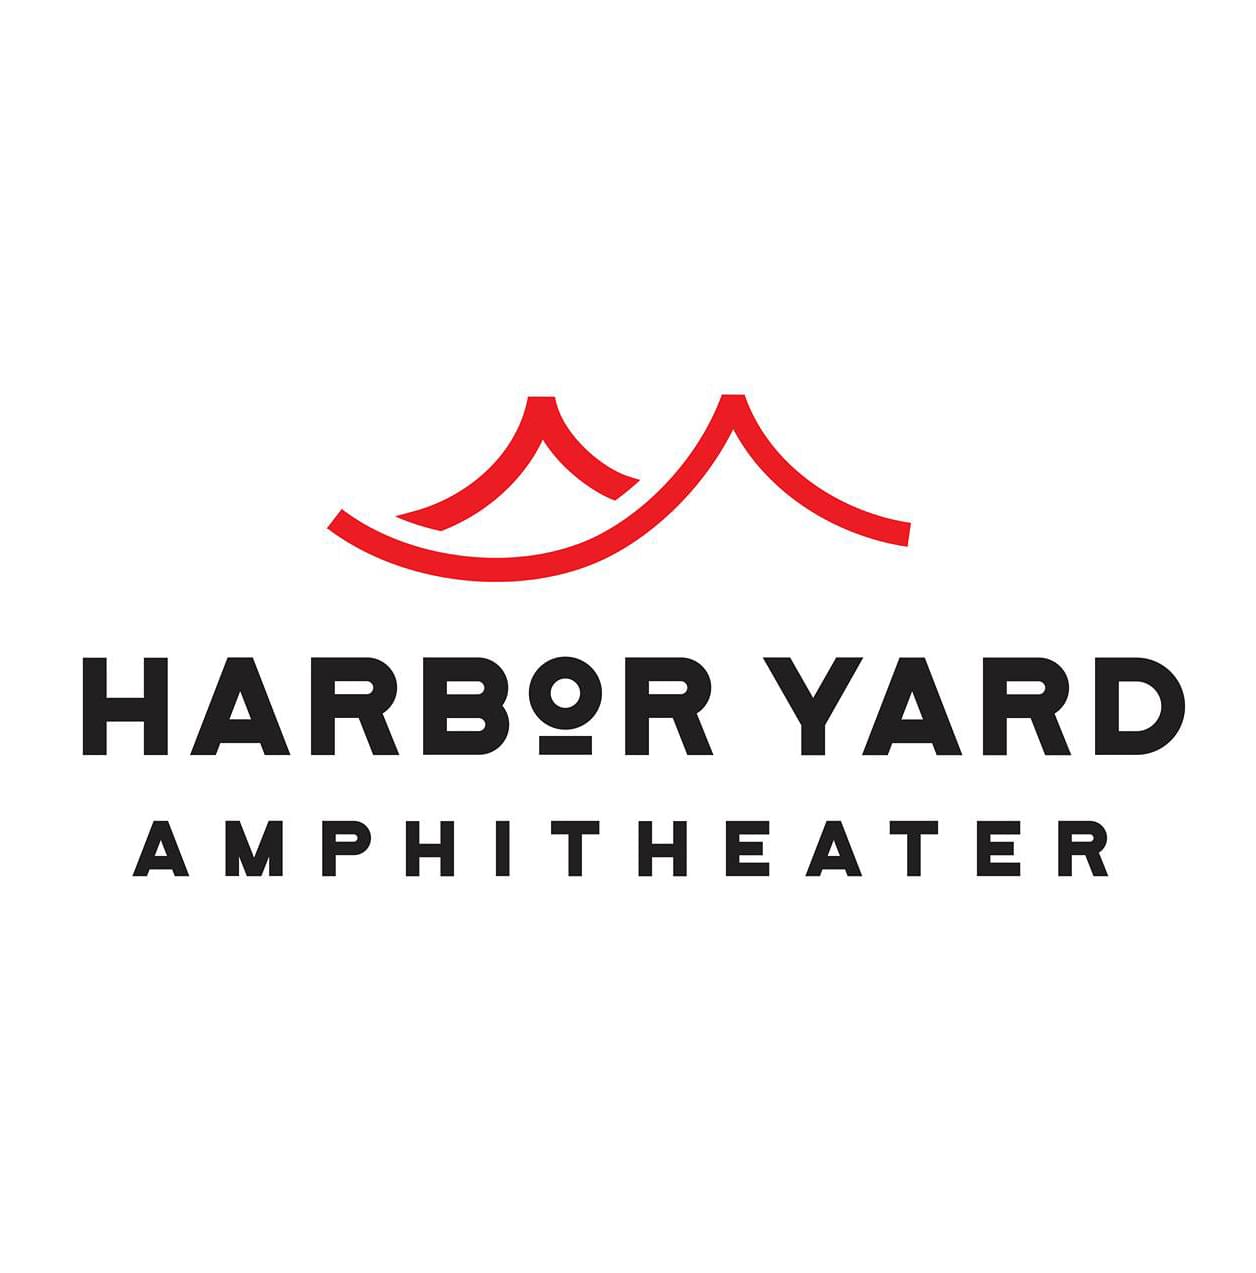 Harbor Yard Amphitheater in Bridgeport Postpones Opening Until 2021